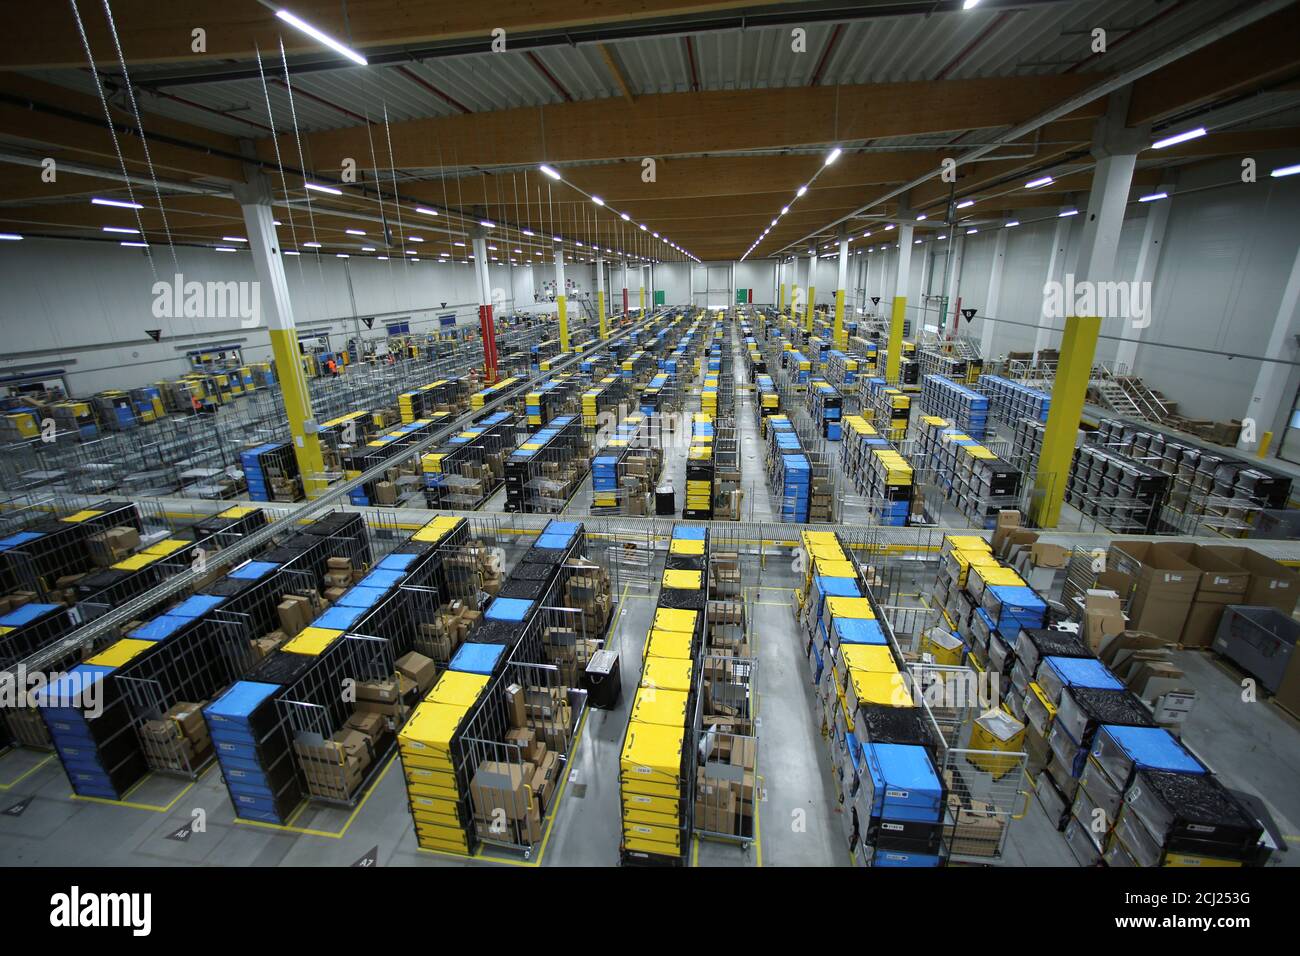 Blick auf das Logistikzentrum von Amazon im Graben, Deutschland, 4. Oktober  2017. 1.900 Mitarbeiter arbeiten im Zentrum. Foto: Stefan puchner/dpa  Stockfotografie - Alamy